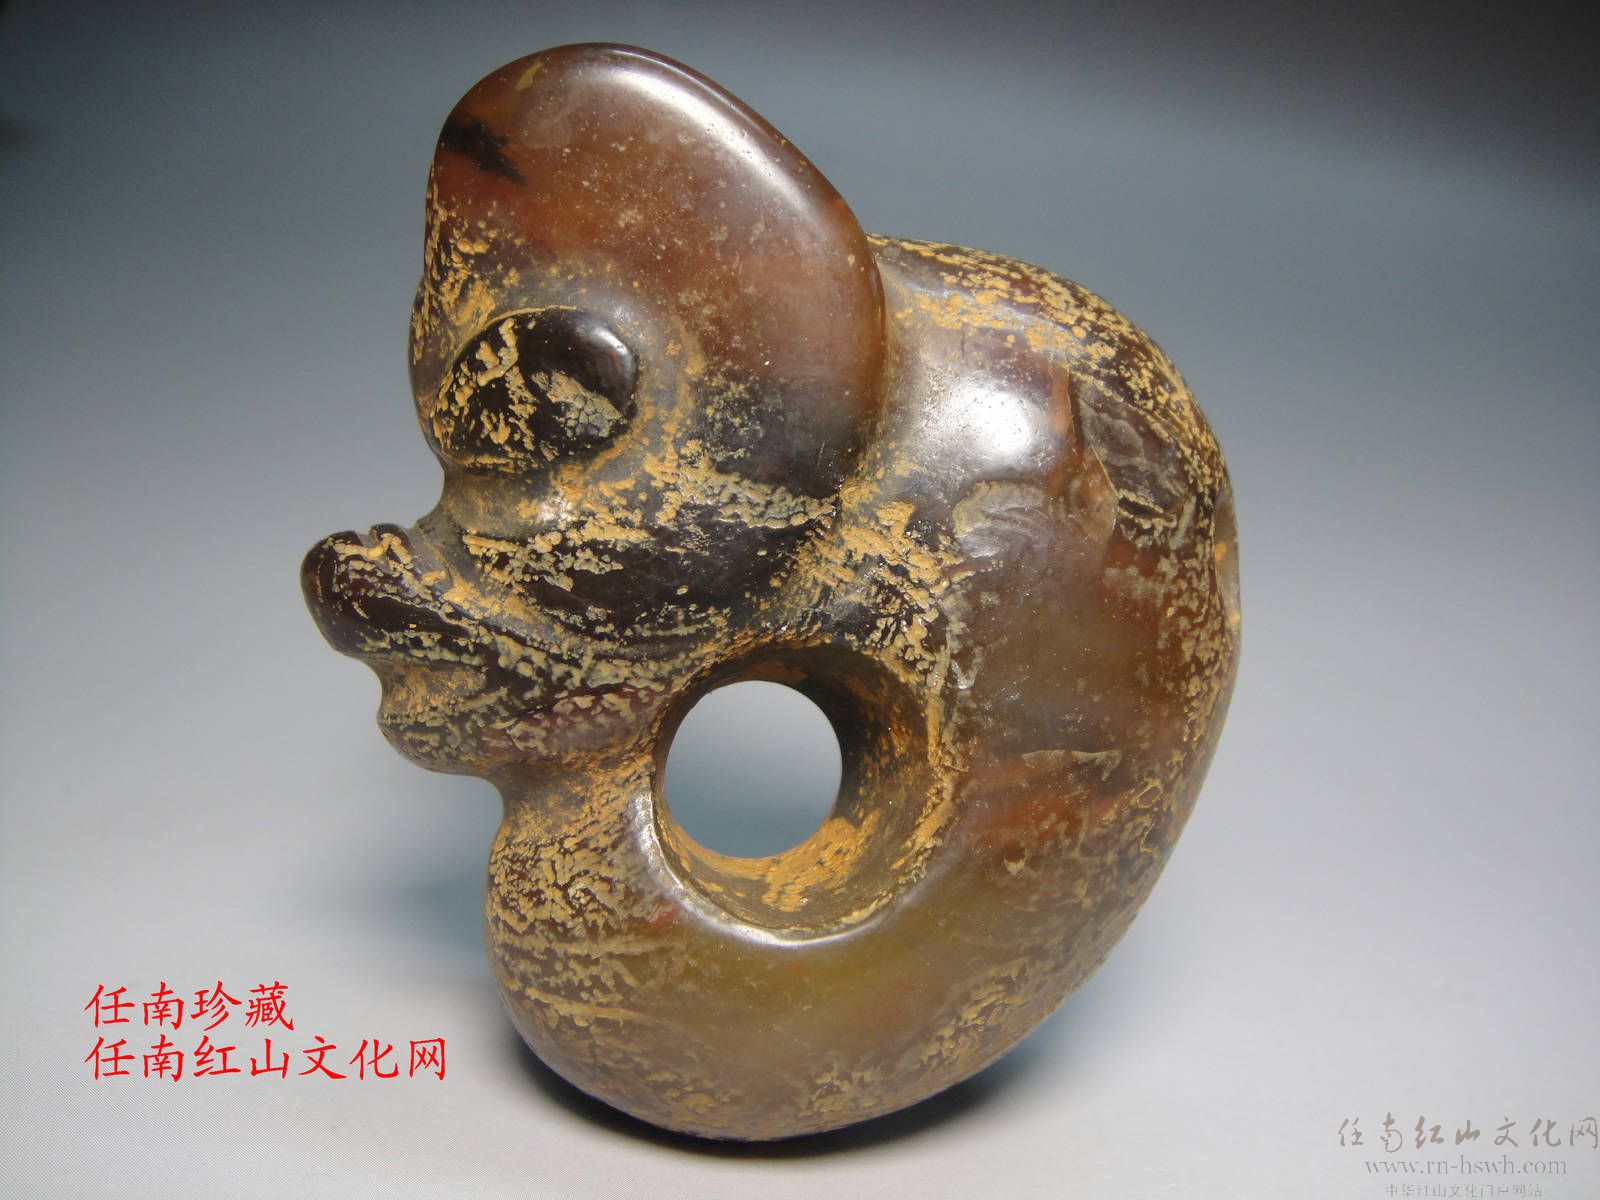 红山文化期玉器皮壳表象(任南珍藏)